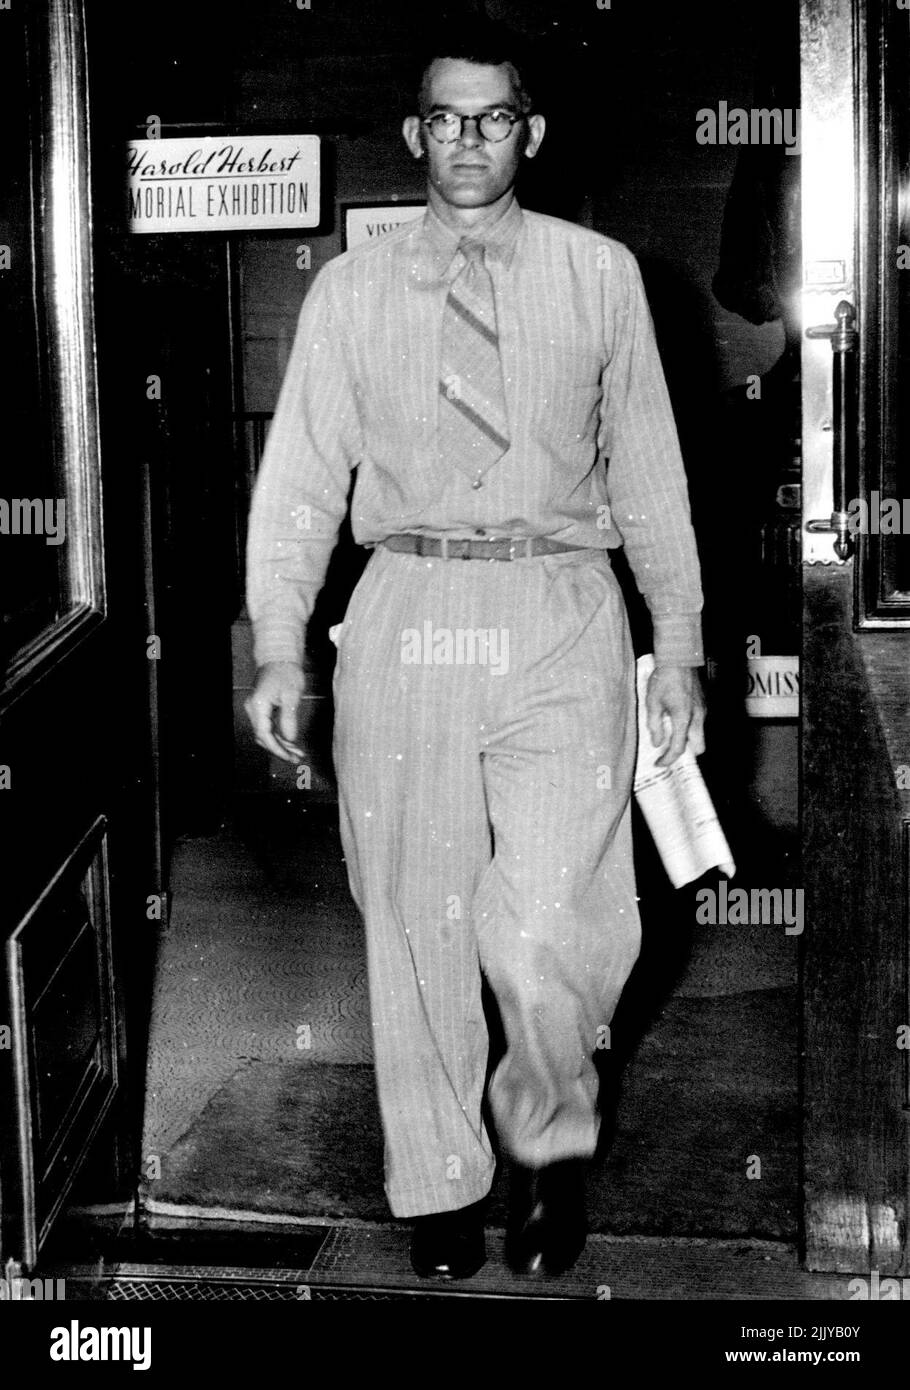 Al Sr. Hal Missingham, director de la Galería Nacional de Arte de Sydney, se le pidió que abandonara el club de viajeros comerciales de Sydney, por estar 'inadecuadamente vestido'. El Sr. Missingham llevaba un traje de camisa (como se muestra en la imagen). Él considera el traje como un traje de verano 'fresco y racional'. 4 de diciembre de 1945. (Foto de Associated Newspapers Ltd.). Foto de stock